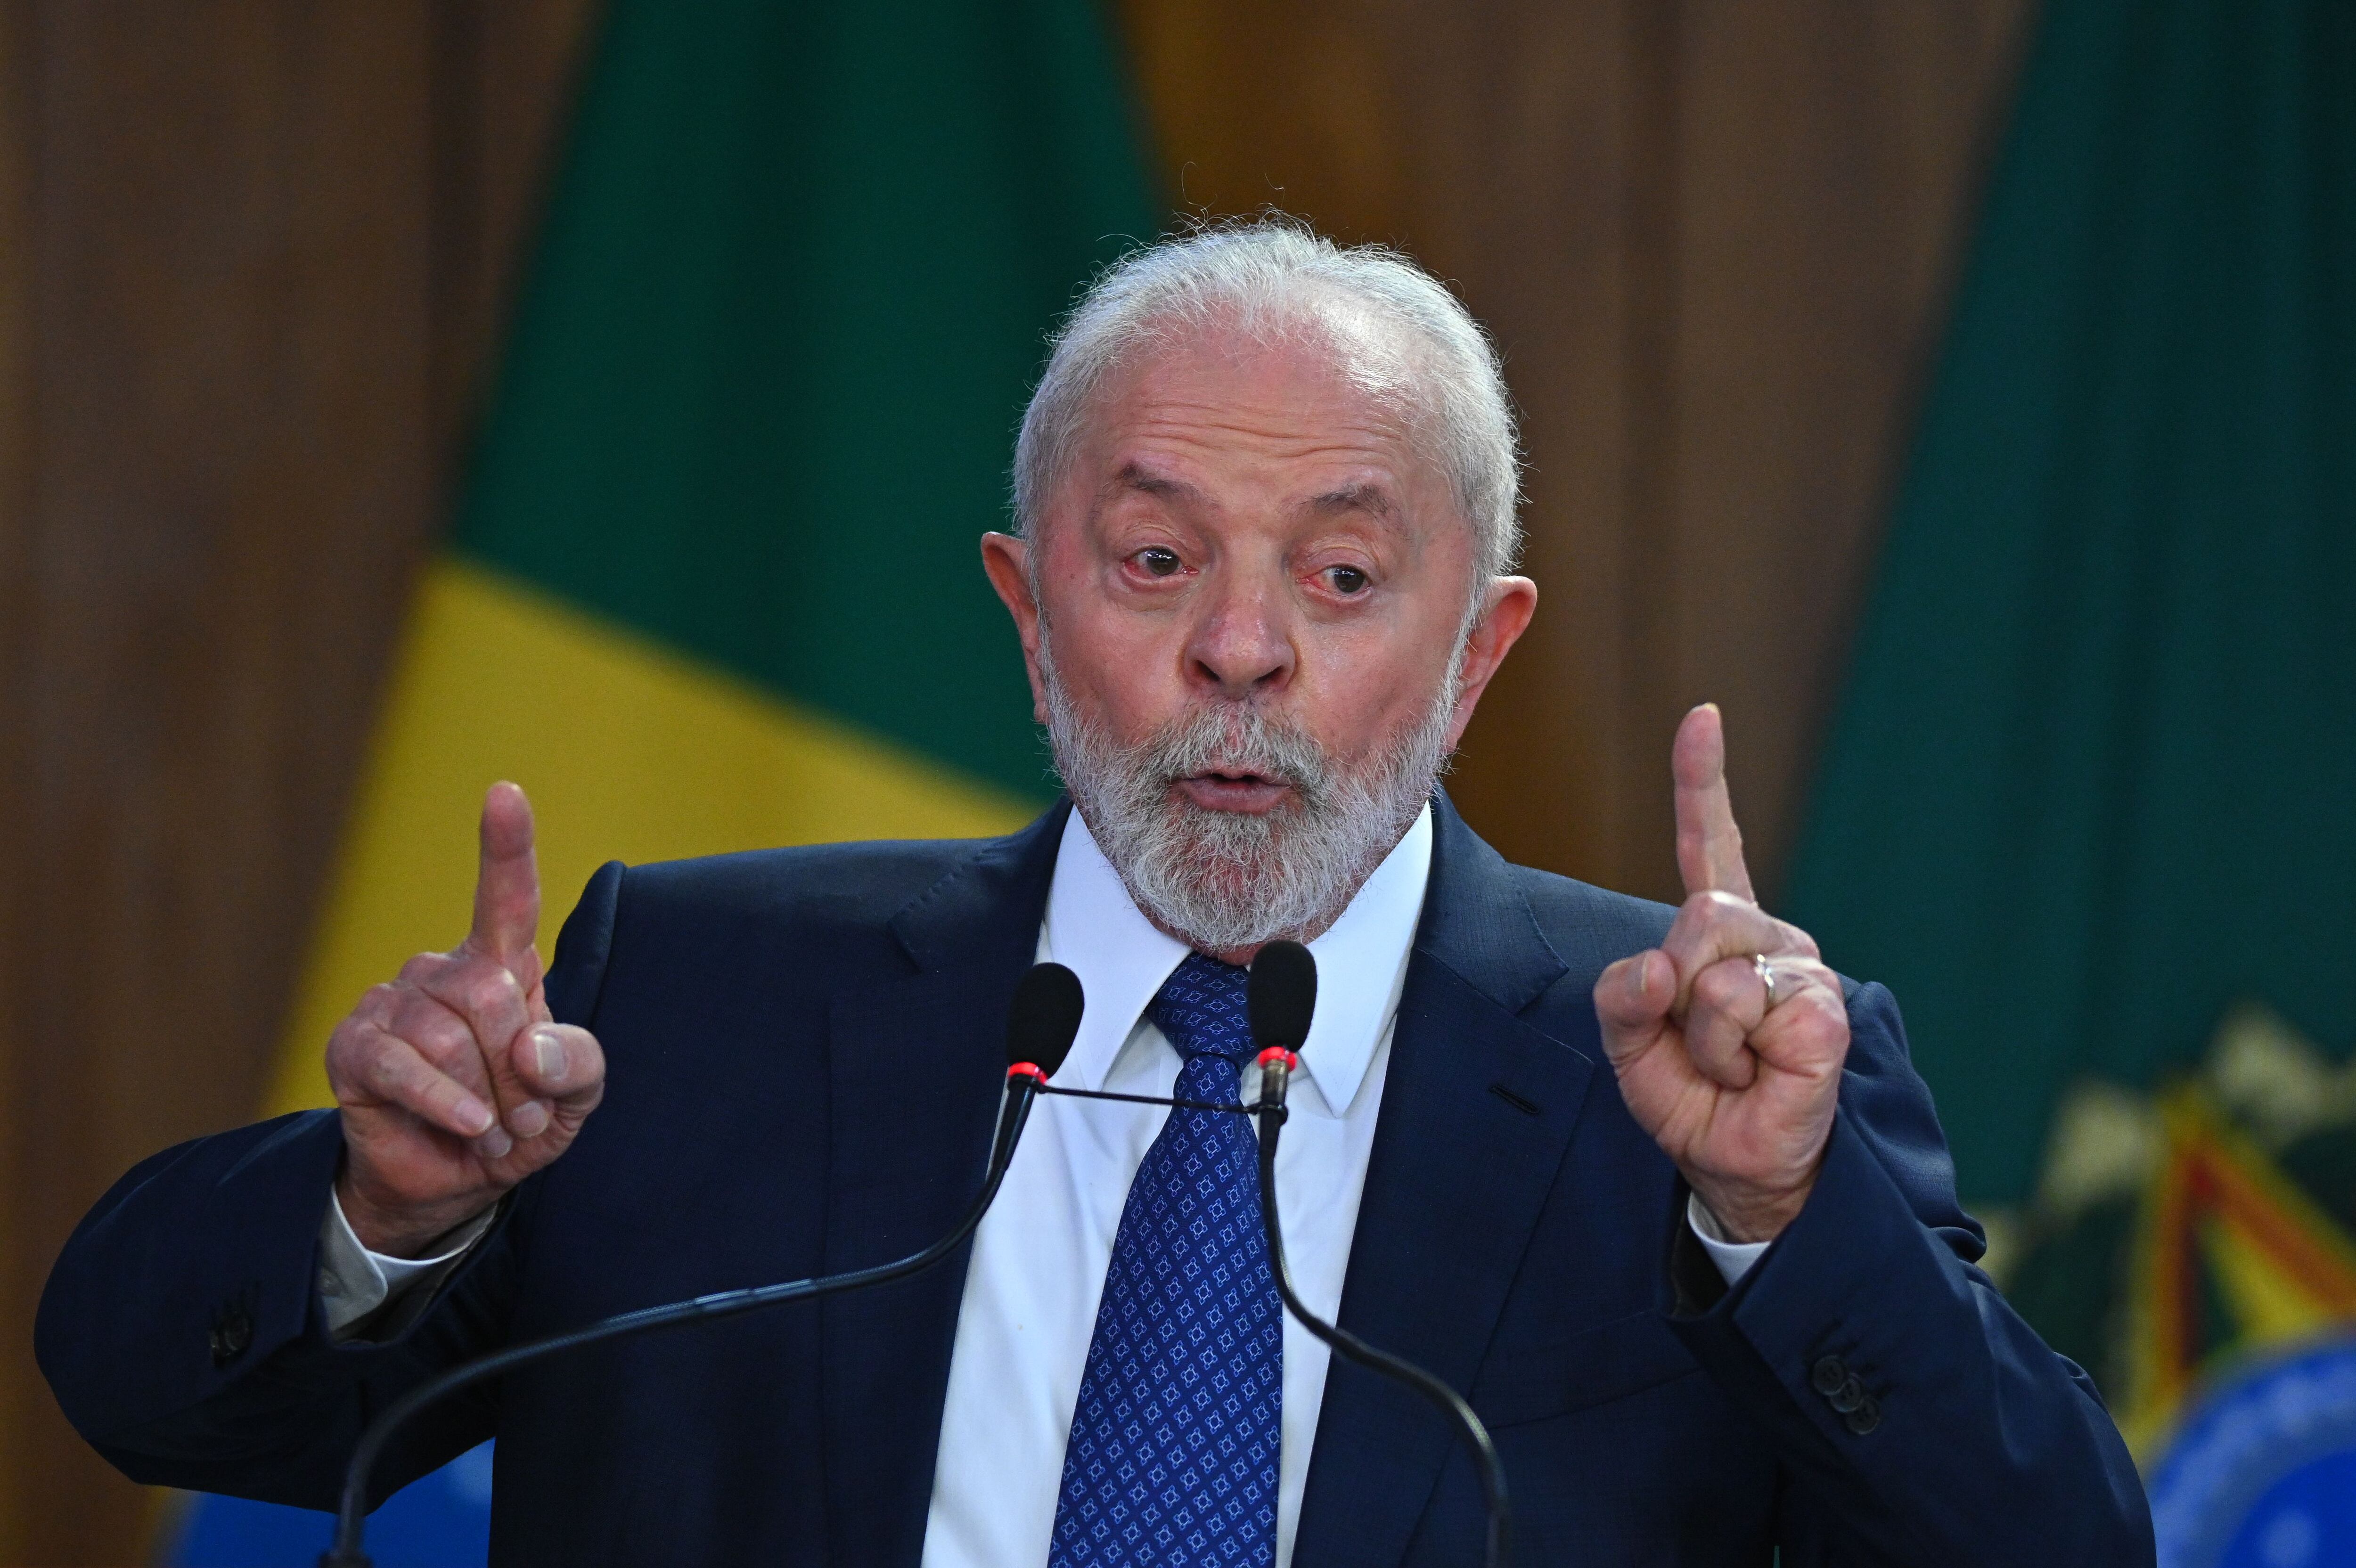 El presidente de Brasil, Luiz Inácio Lula da Silva. EFE/Andre Borges